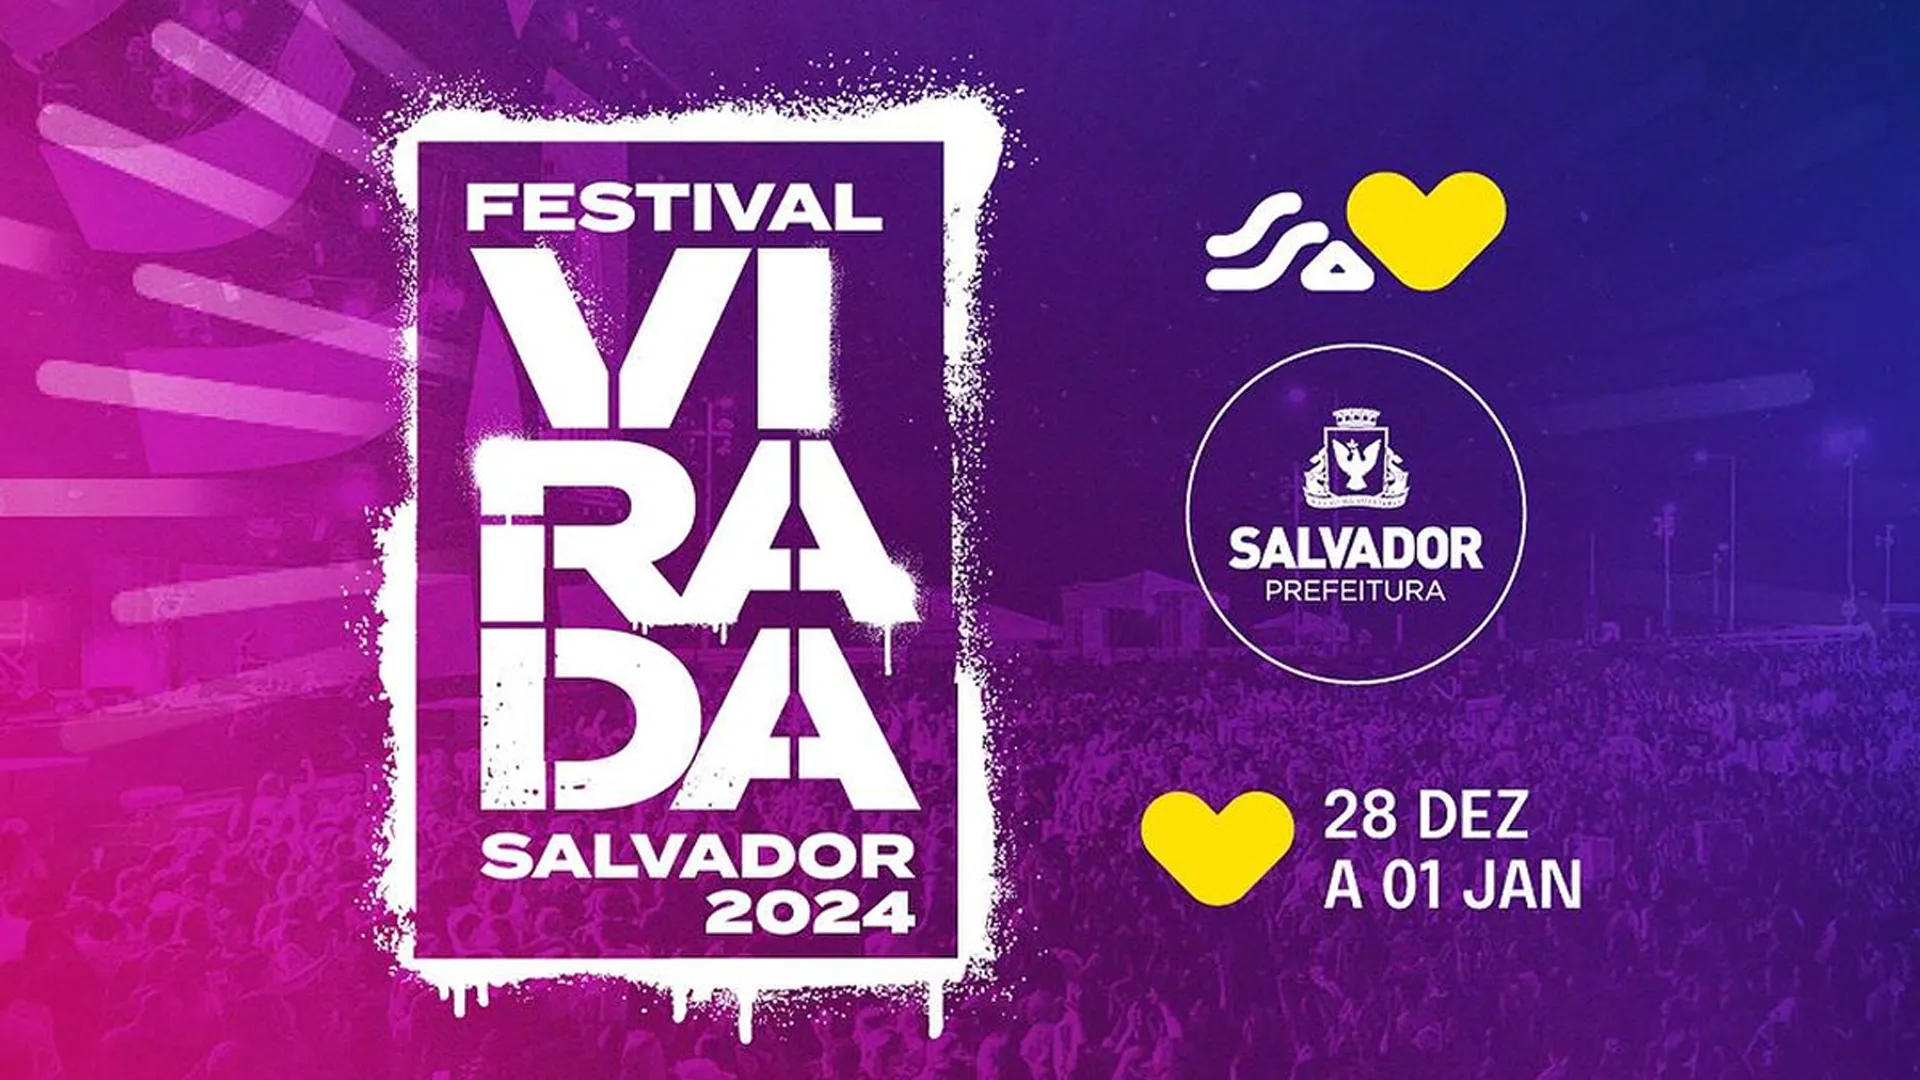 
		Festival Virada Salvador 2024 - 30 de dezembro